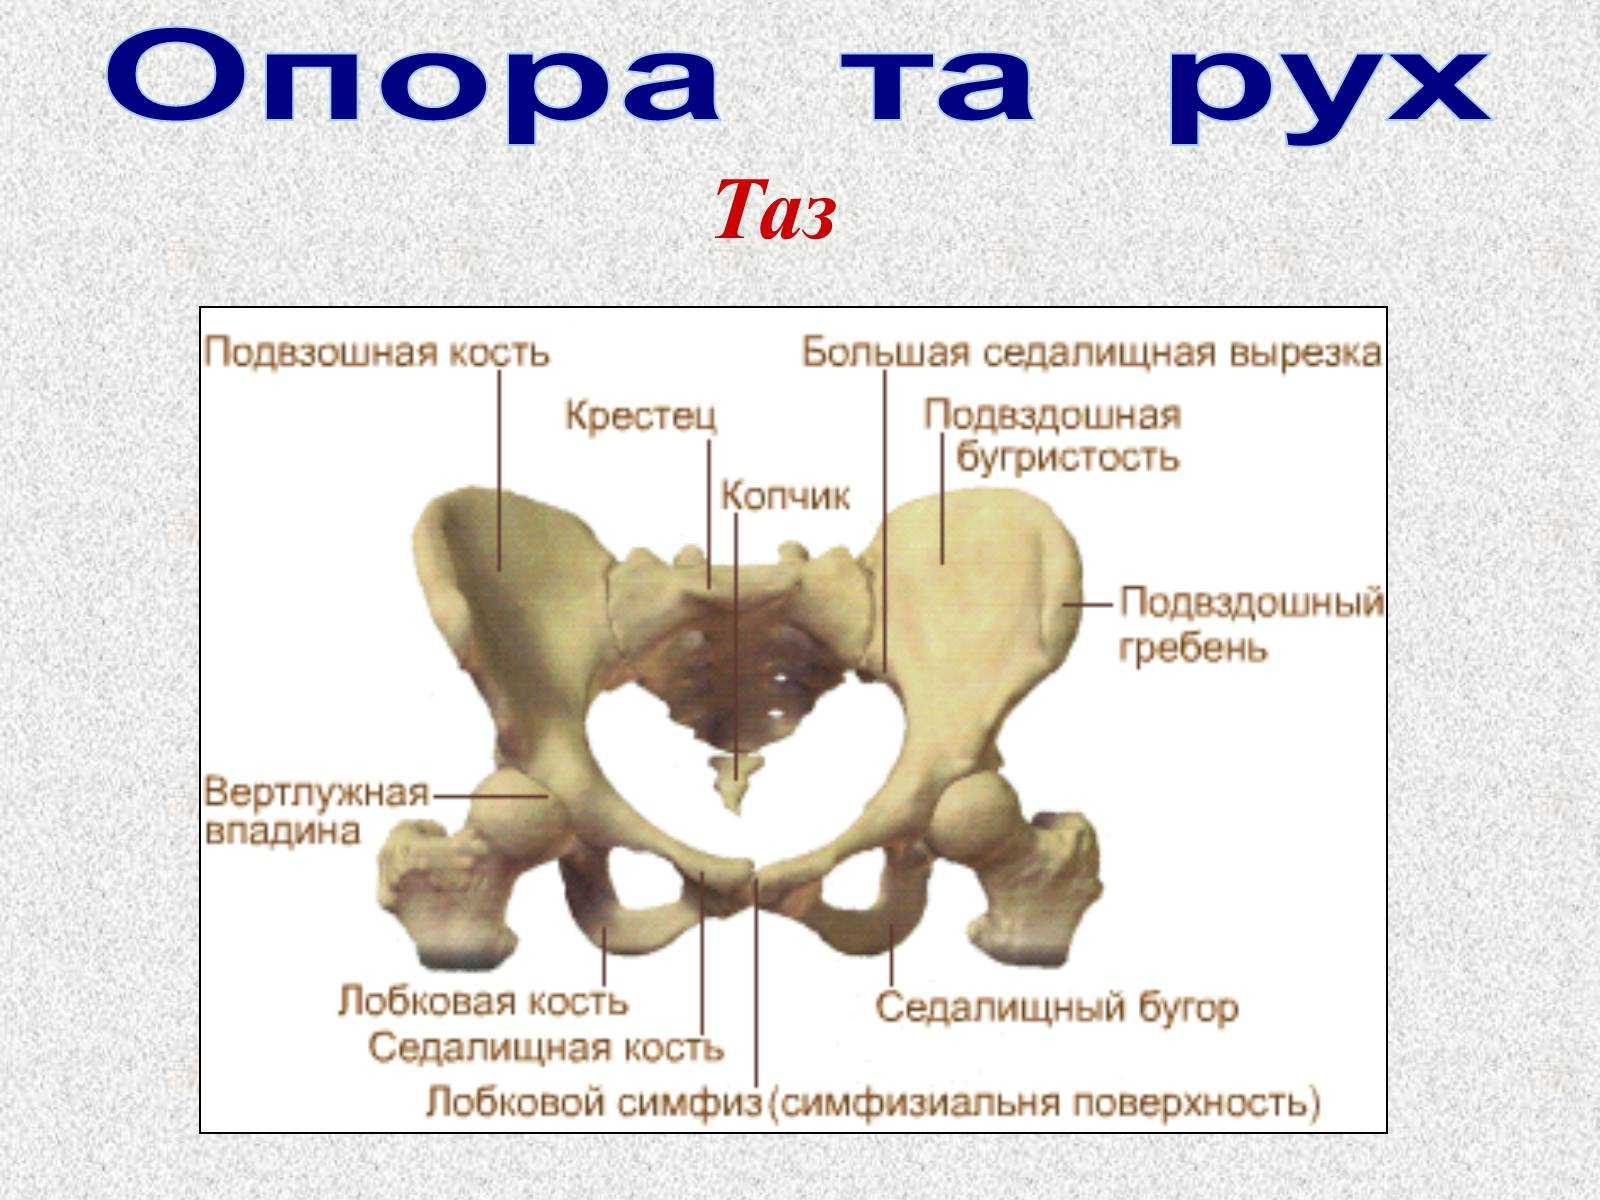 1 подвздошная кость. Таз строение тазовой кости. Анатомия подвздошной кости. Подвздошная кость женский таз кости. Лонная кость строение таза.